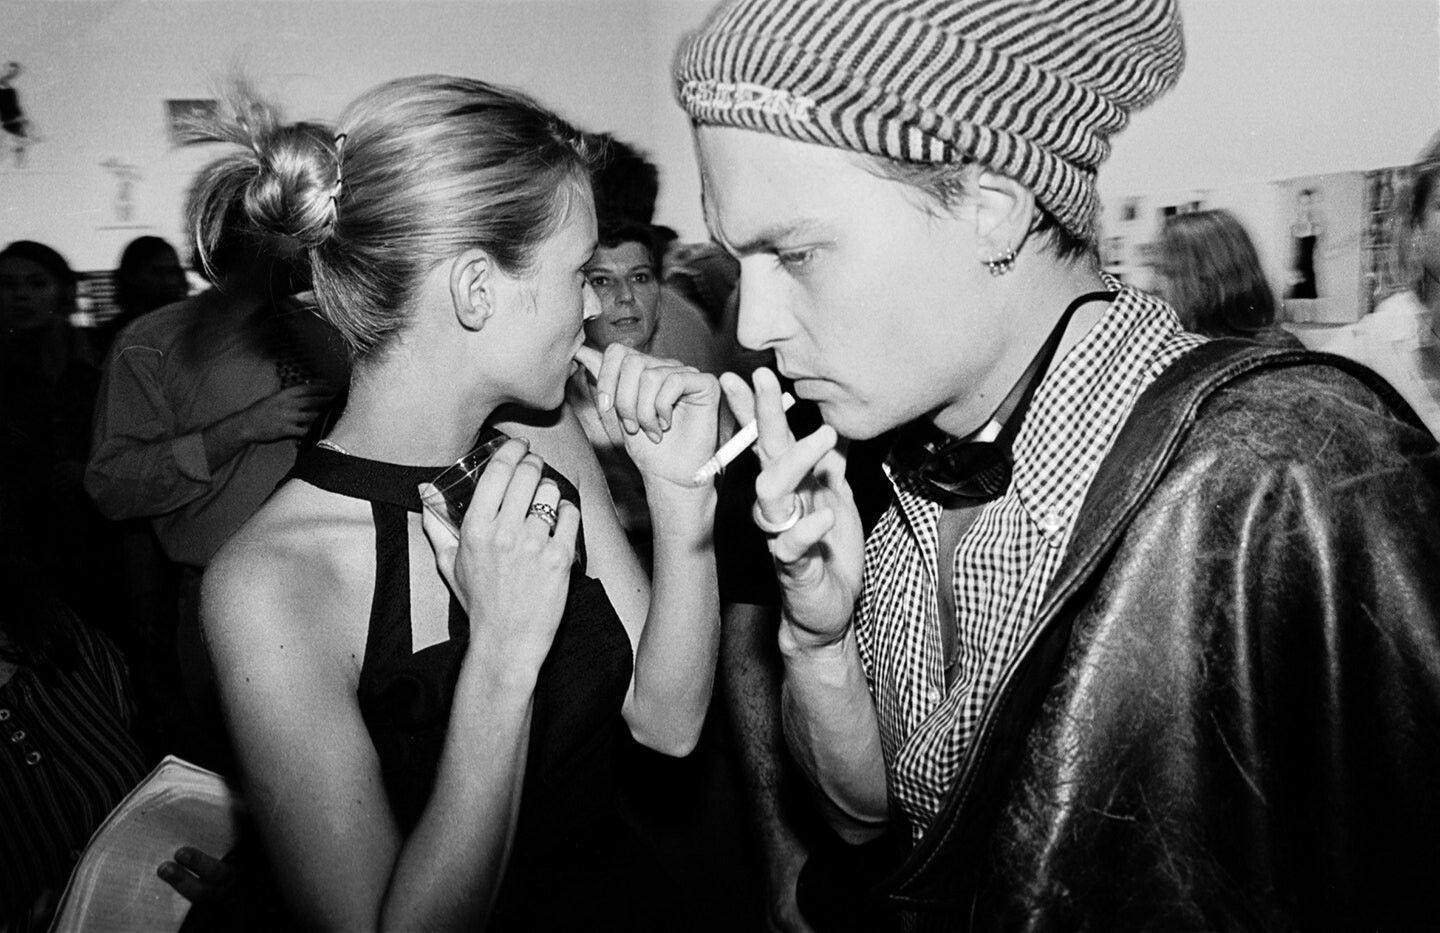 Кейт Мосс и Джонни Депп на вечеринке в Нью-Йорке, 1995. Фотограф Дафидд Джонс